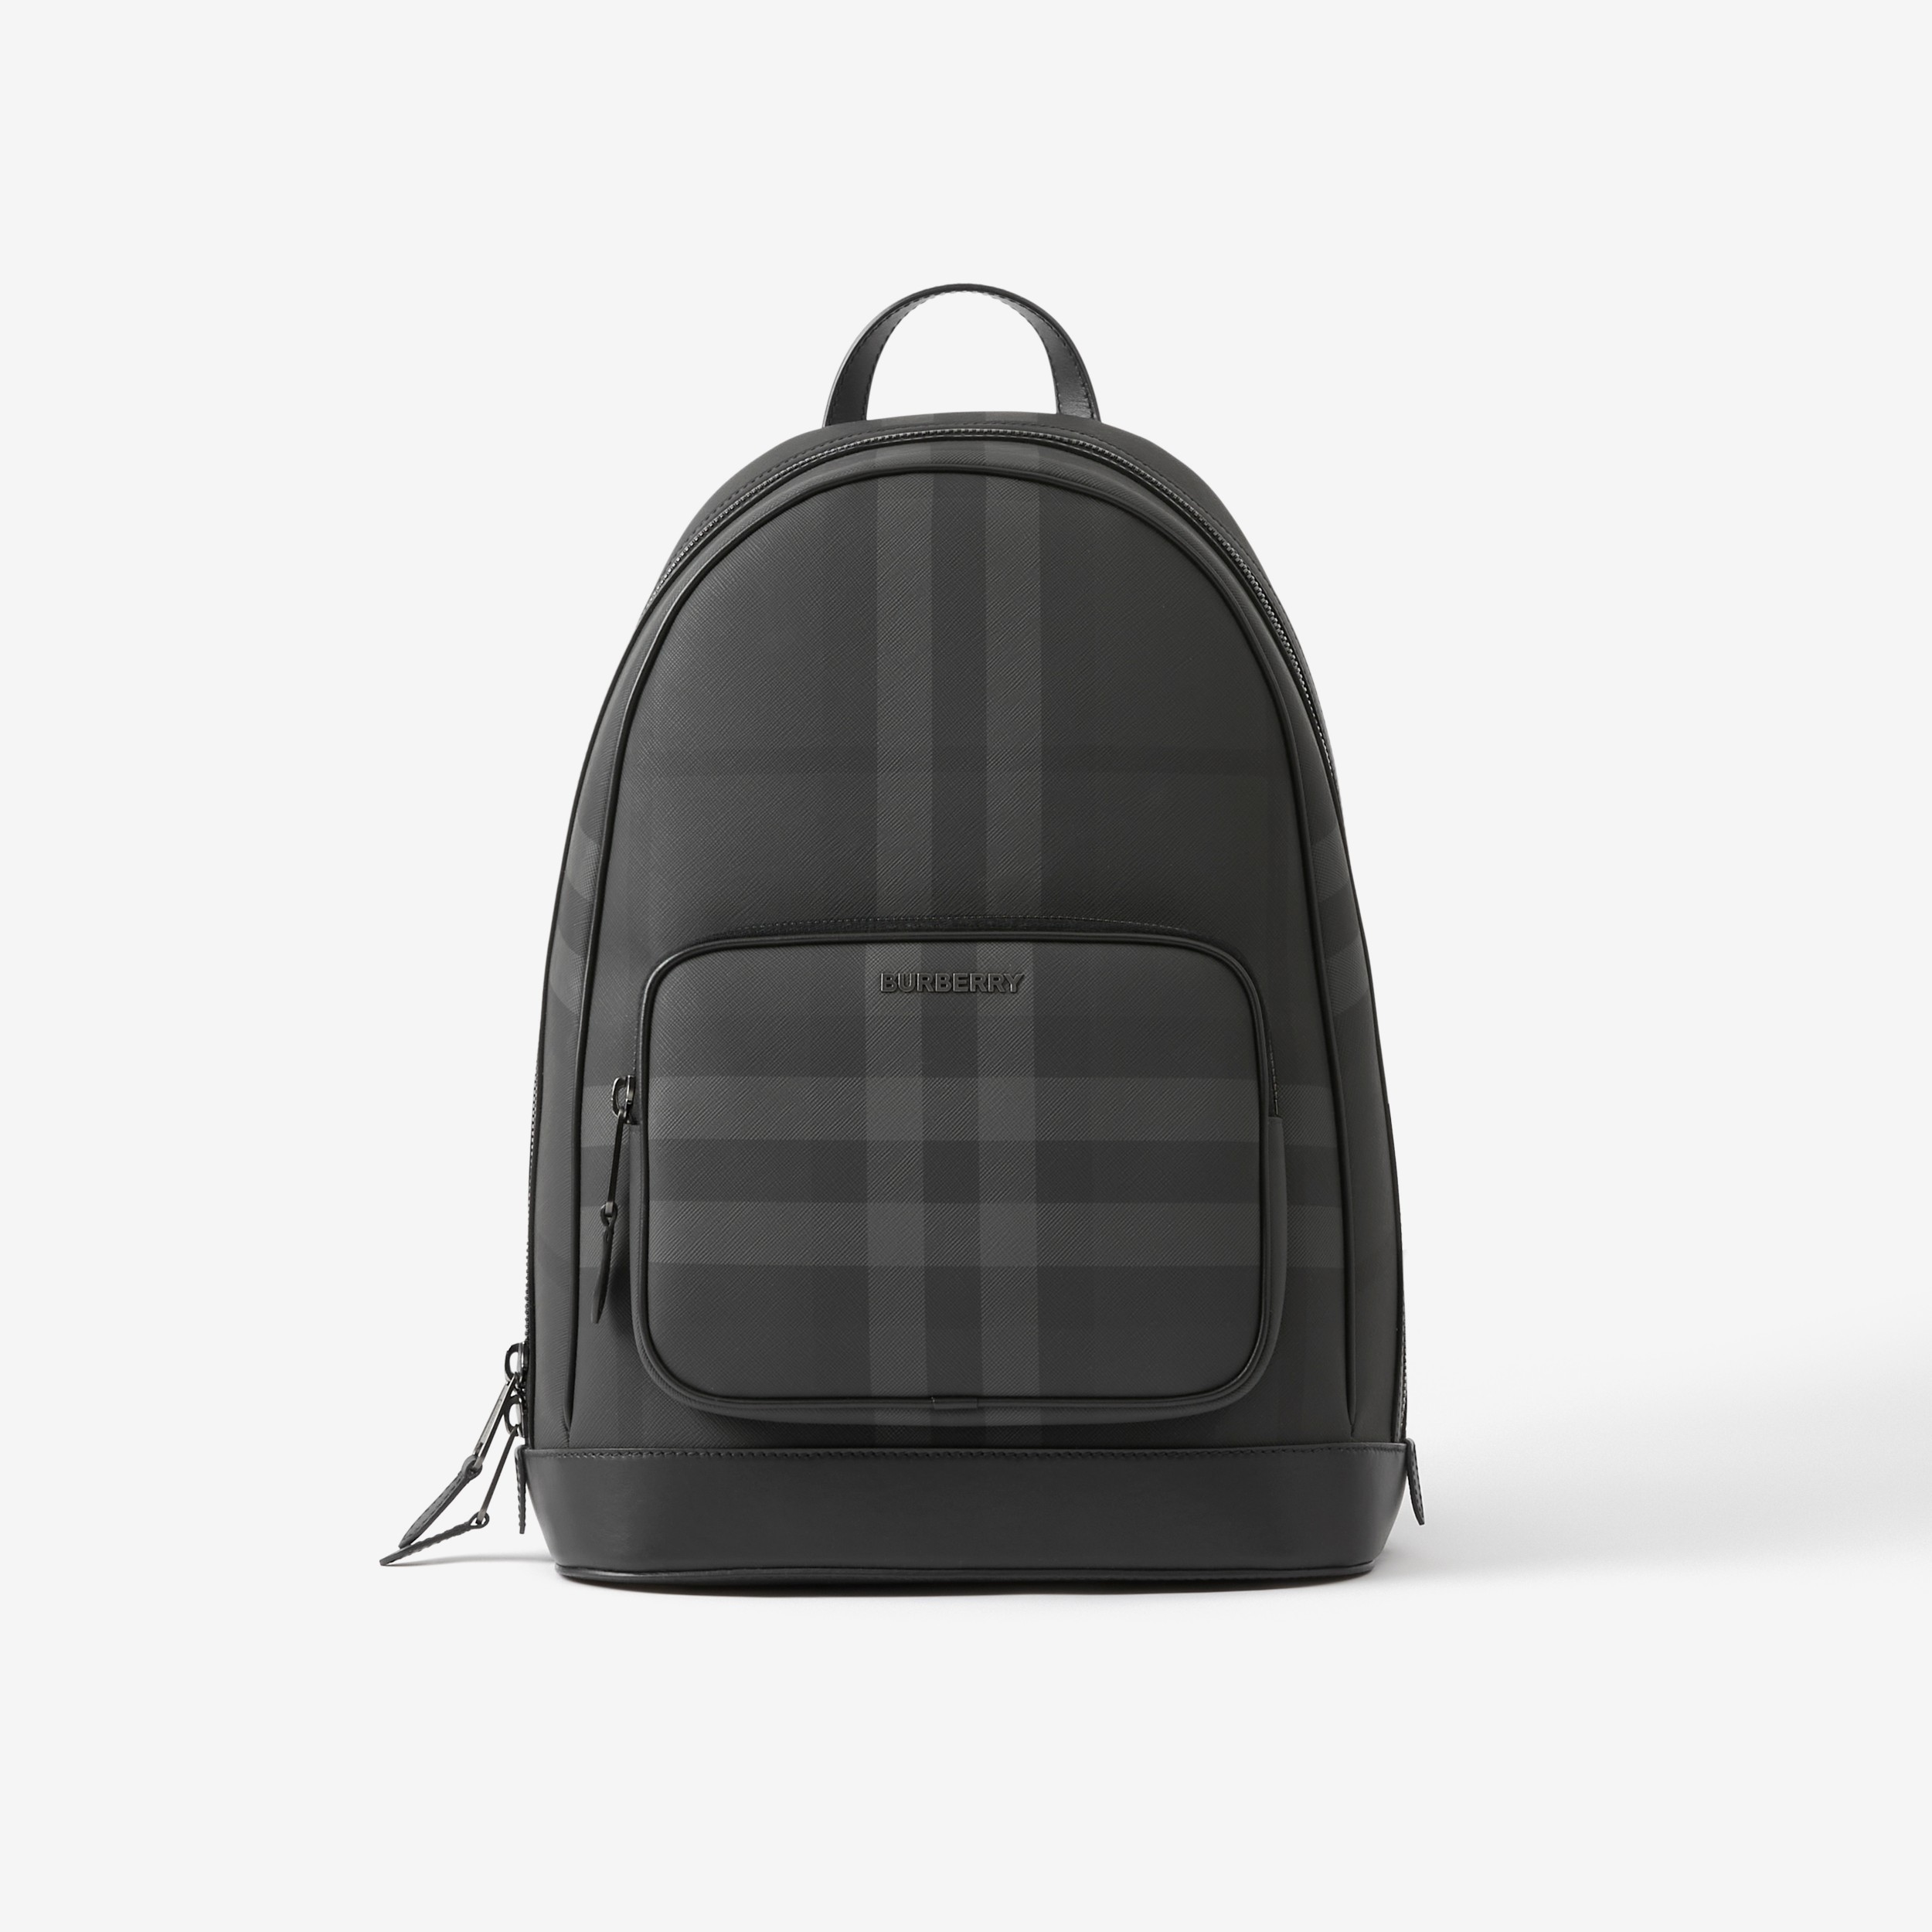 Actualizar 34+ imagen burberry laptop backpack